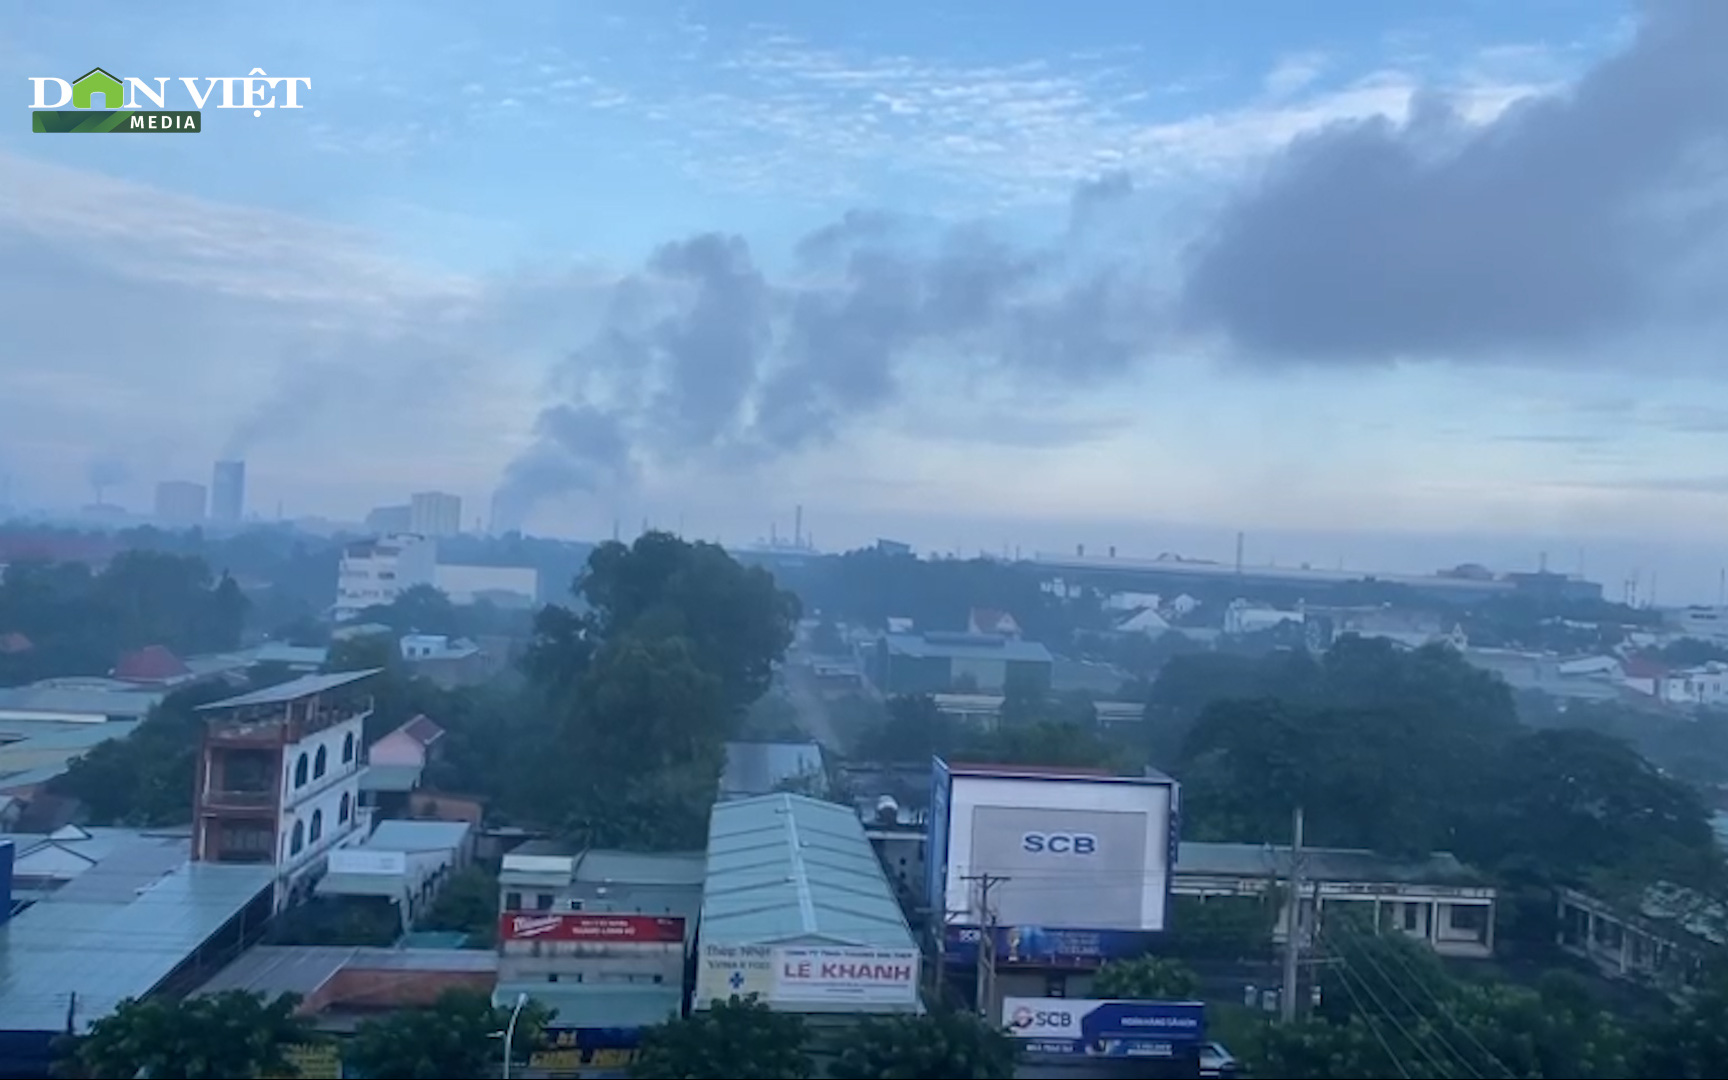 Bà Rịa - Vũng Tàu: Doanh nghiệp xả khói đen kịt bầu trời khiến người dân lo lắng